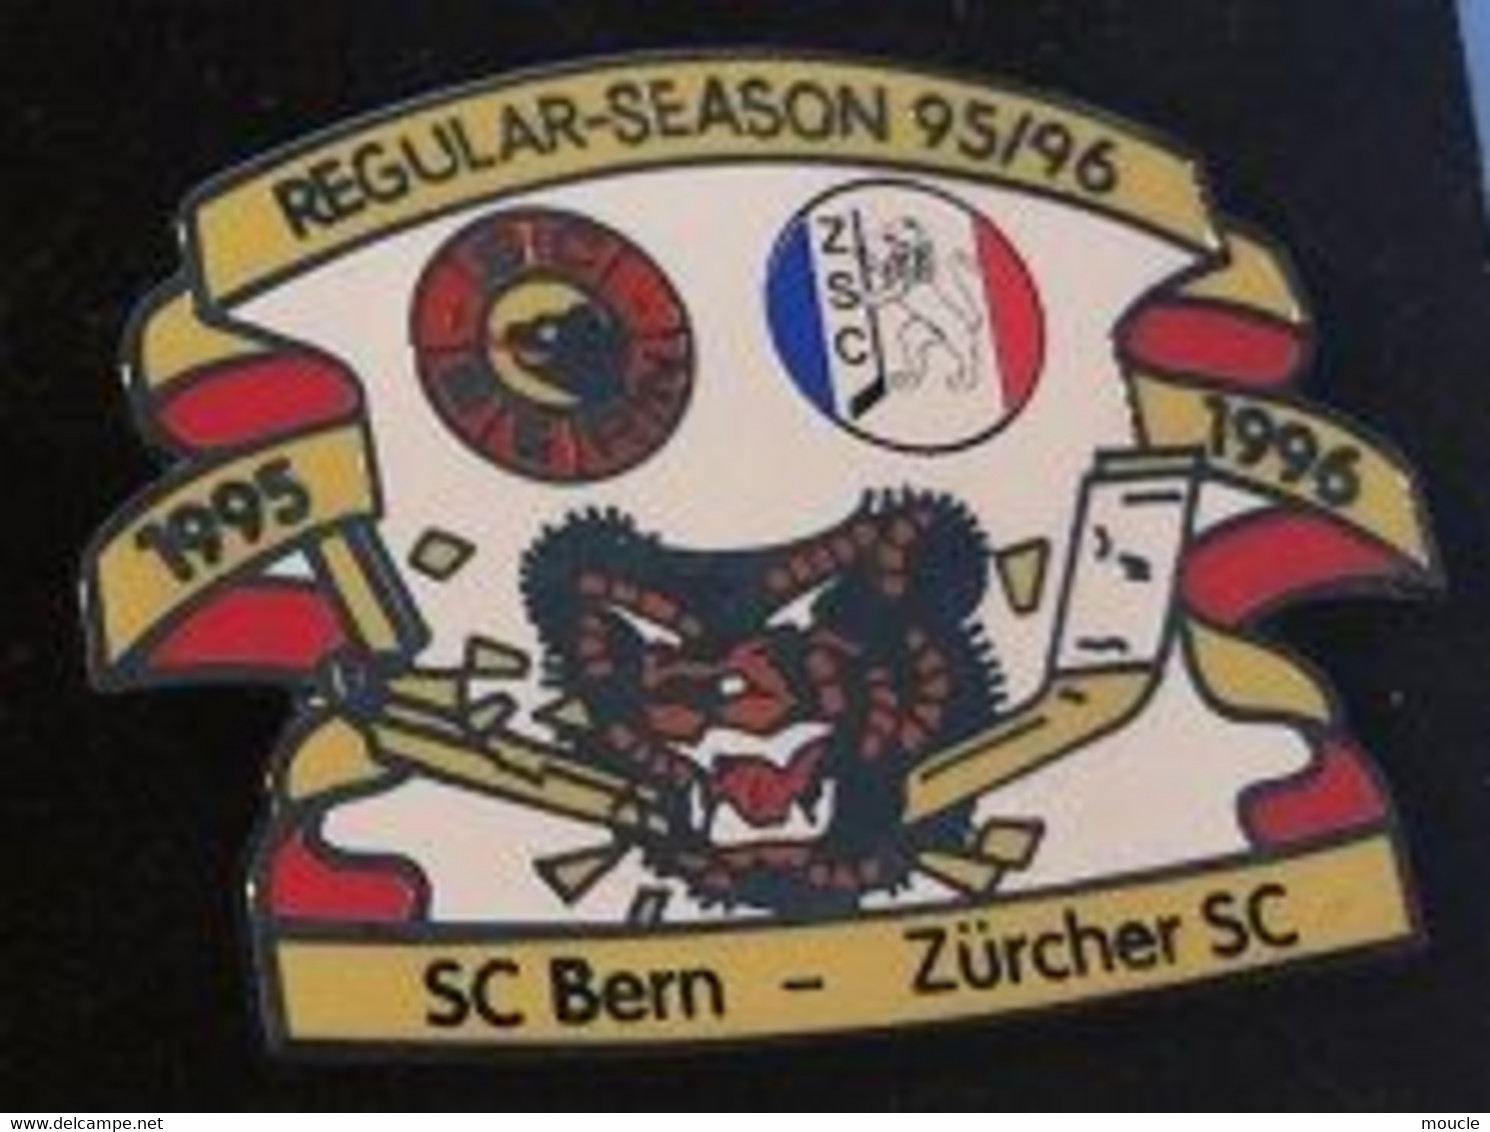 HOCKEY SUR GLACE - SUISSE - SCHWEIZ - SWITZERLAND - REGULAR SAISON 95/96 - SC BERN / ZÜRCHER SC - ICE - EGF -  (29) - Sports D'hiver